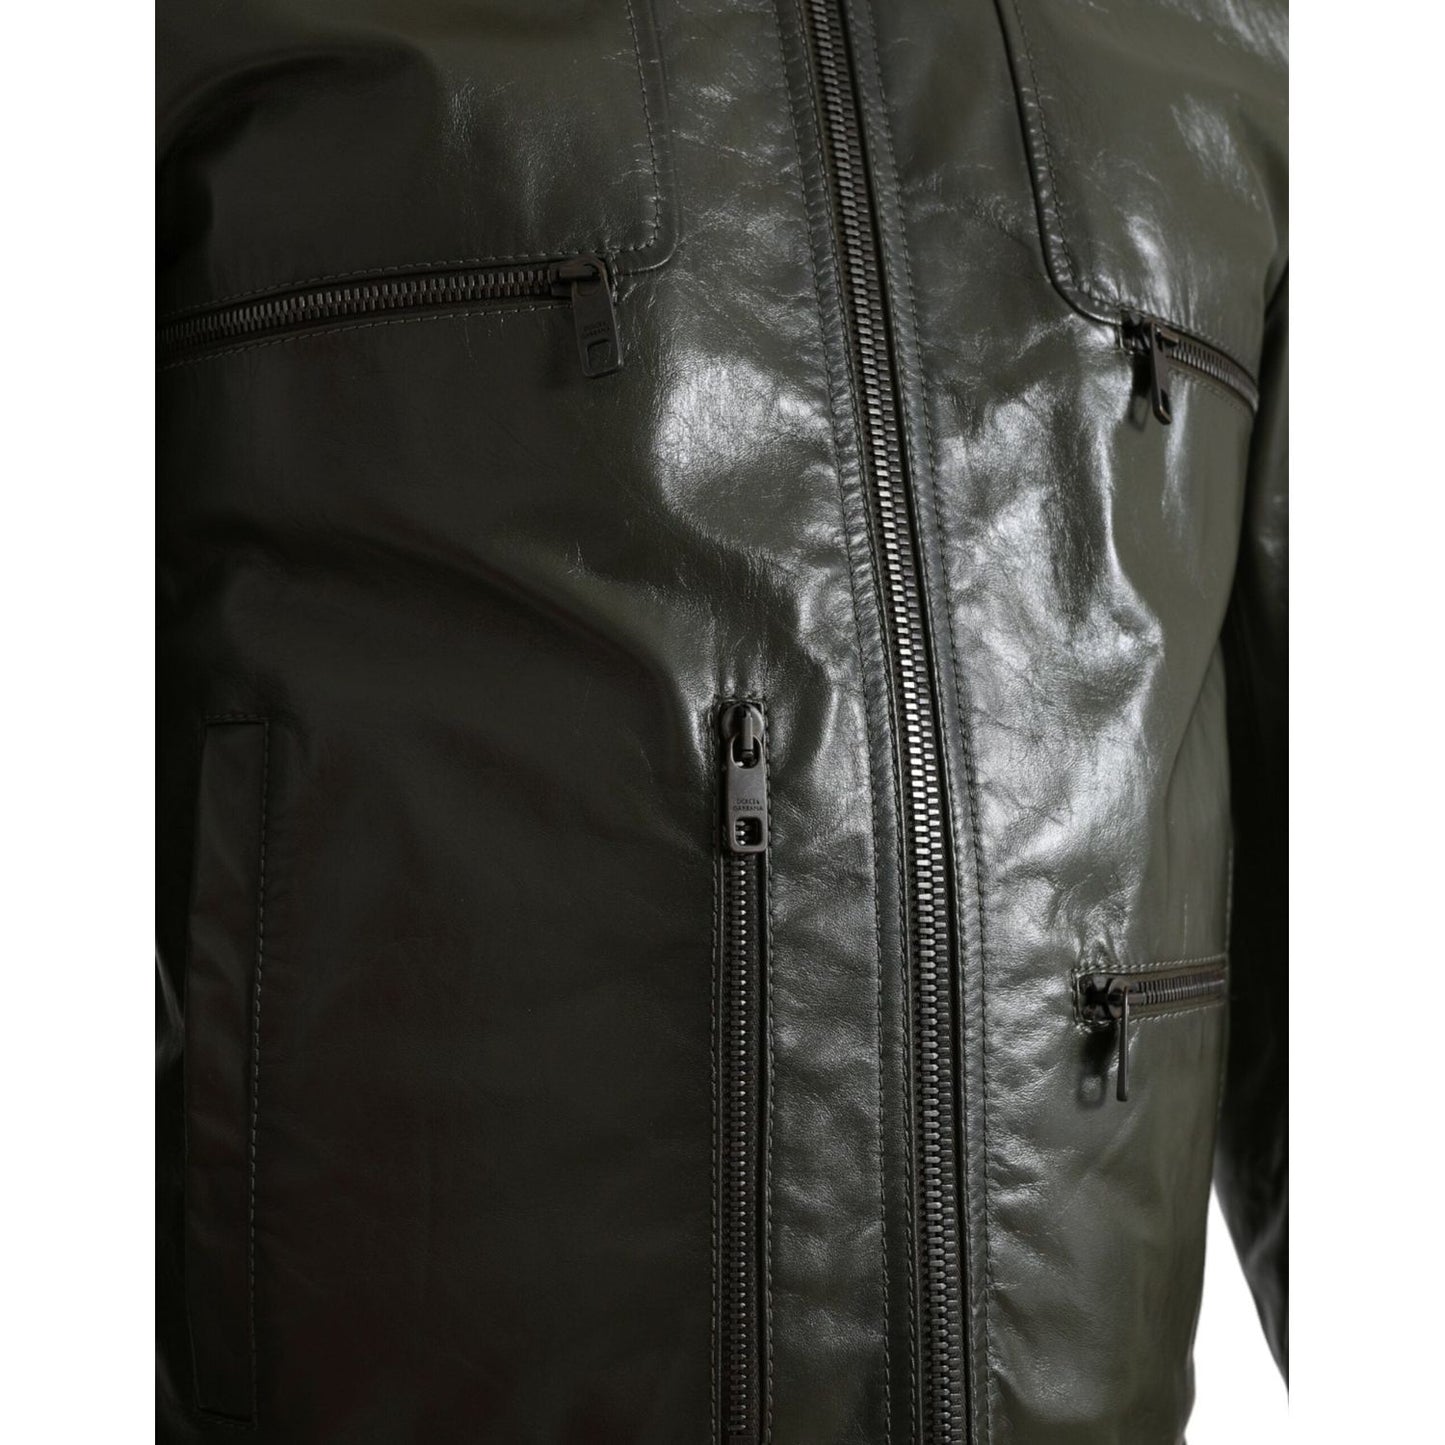 Dolce & Gabbana | Emerald Elegance Leather Biker Jacket| McRichard Designer Brands   